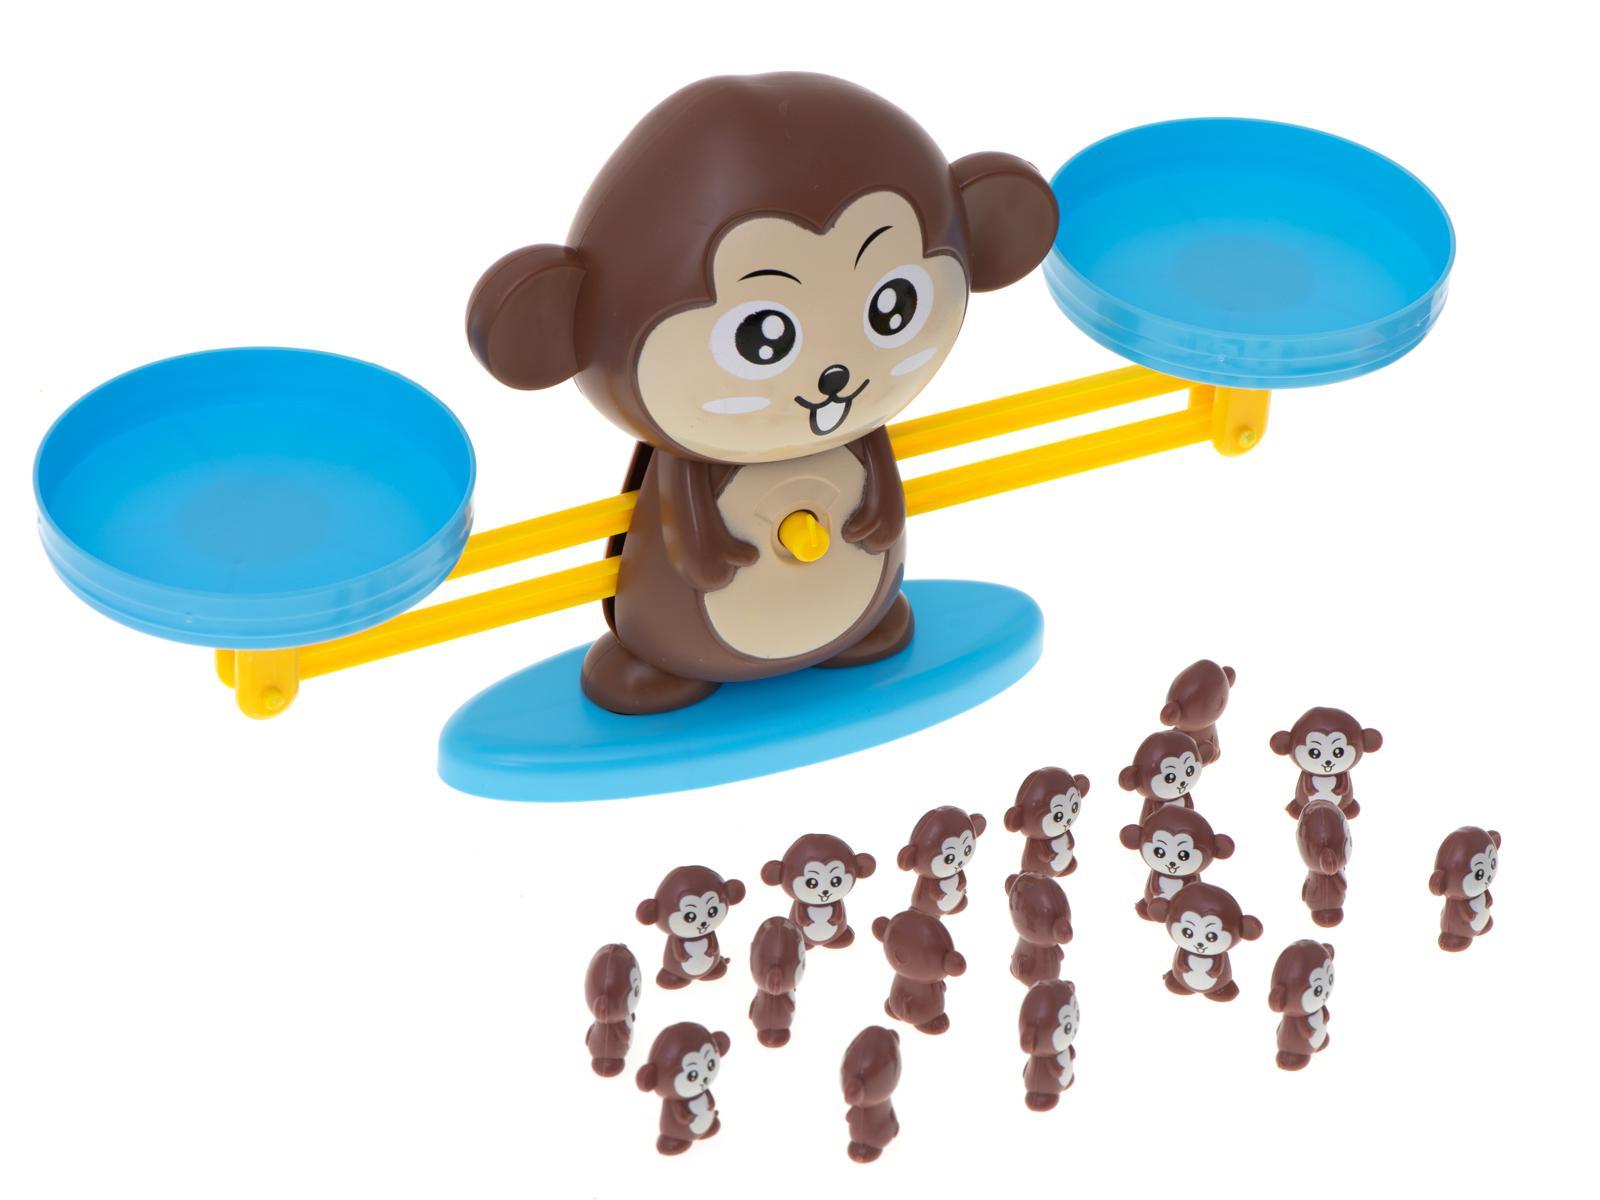 Waga szalkowa edukacyjna nauka liczenia małpka duża dla dzieci 34,5x9,5x8 cm 5 Full Screen